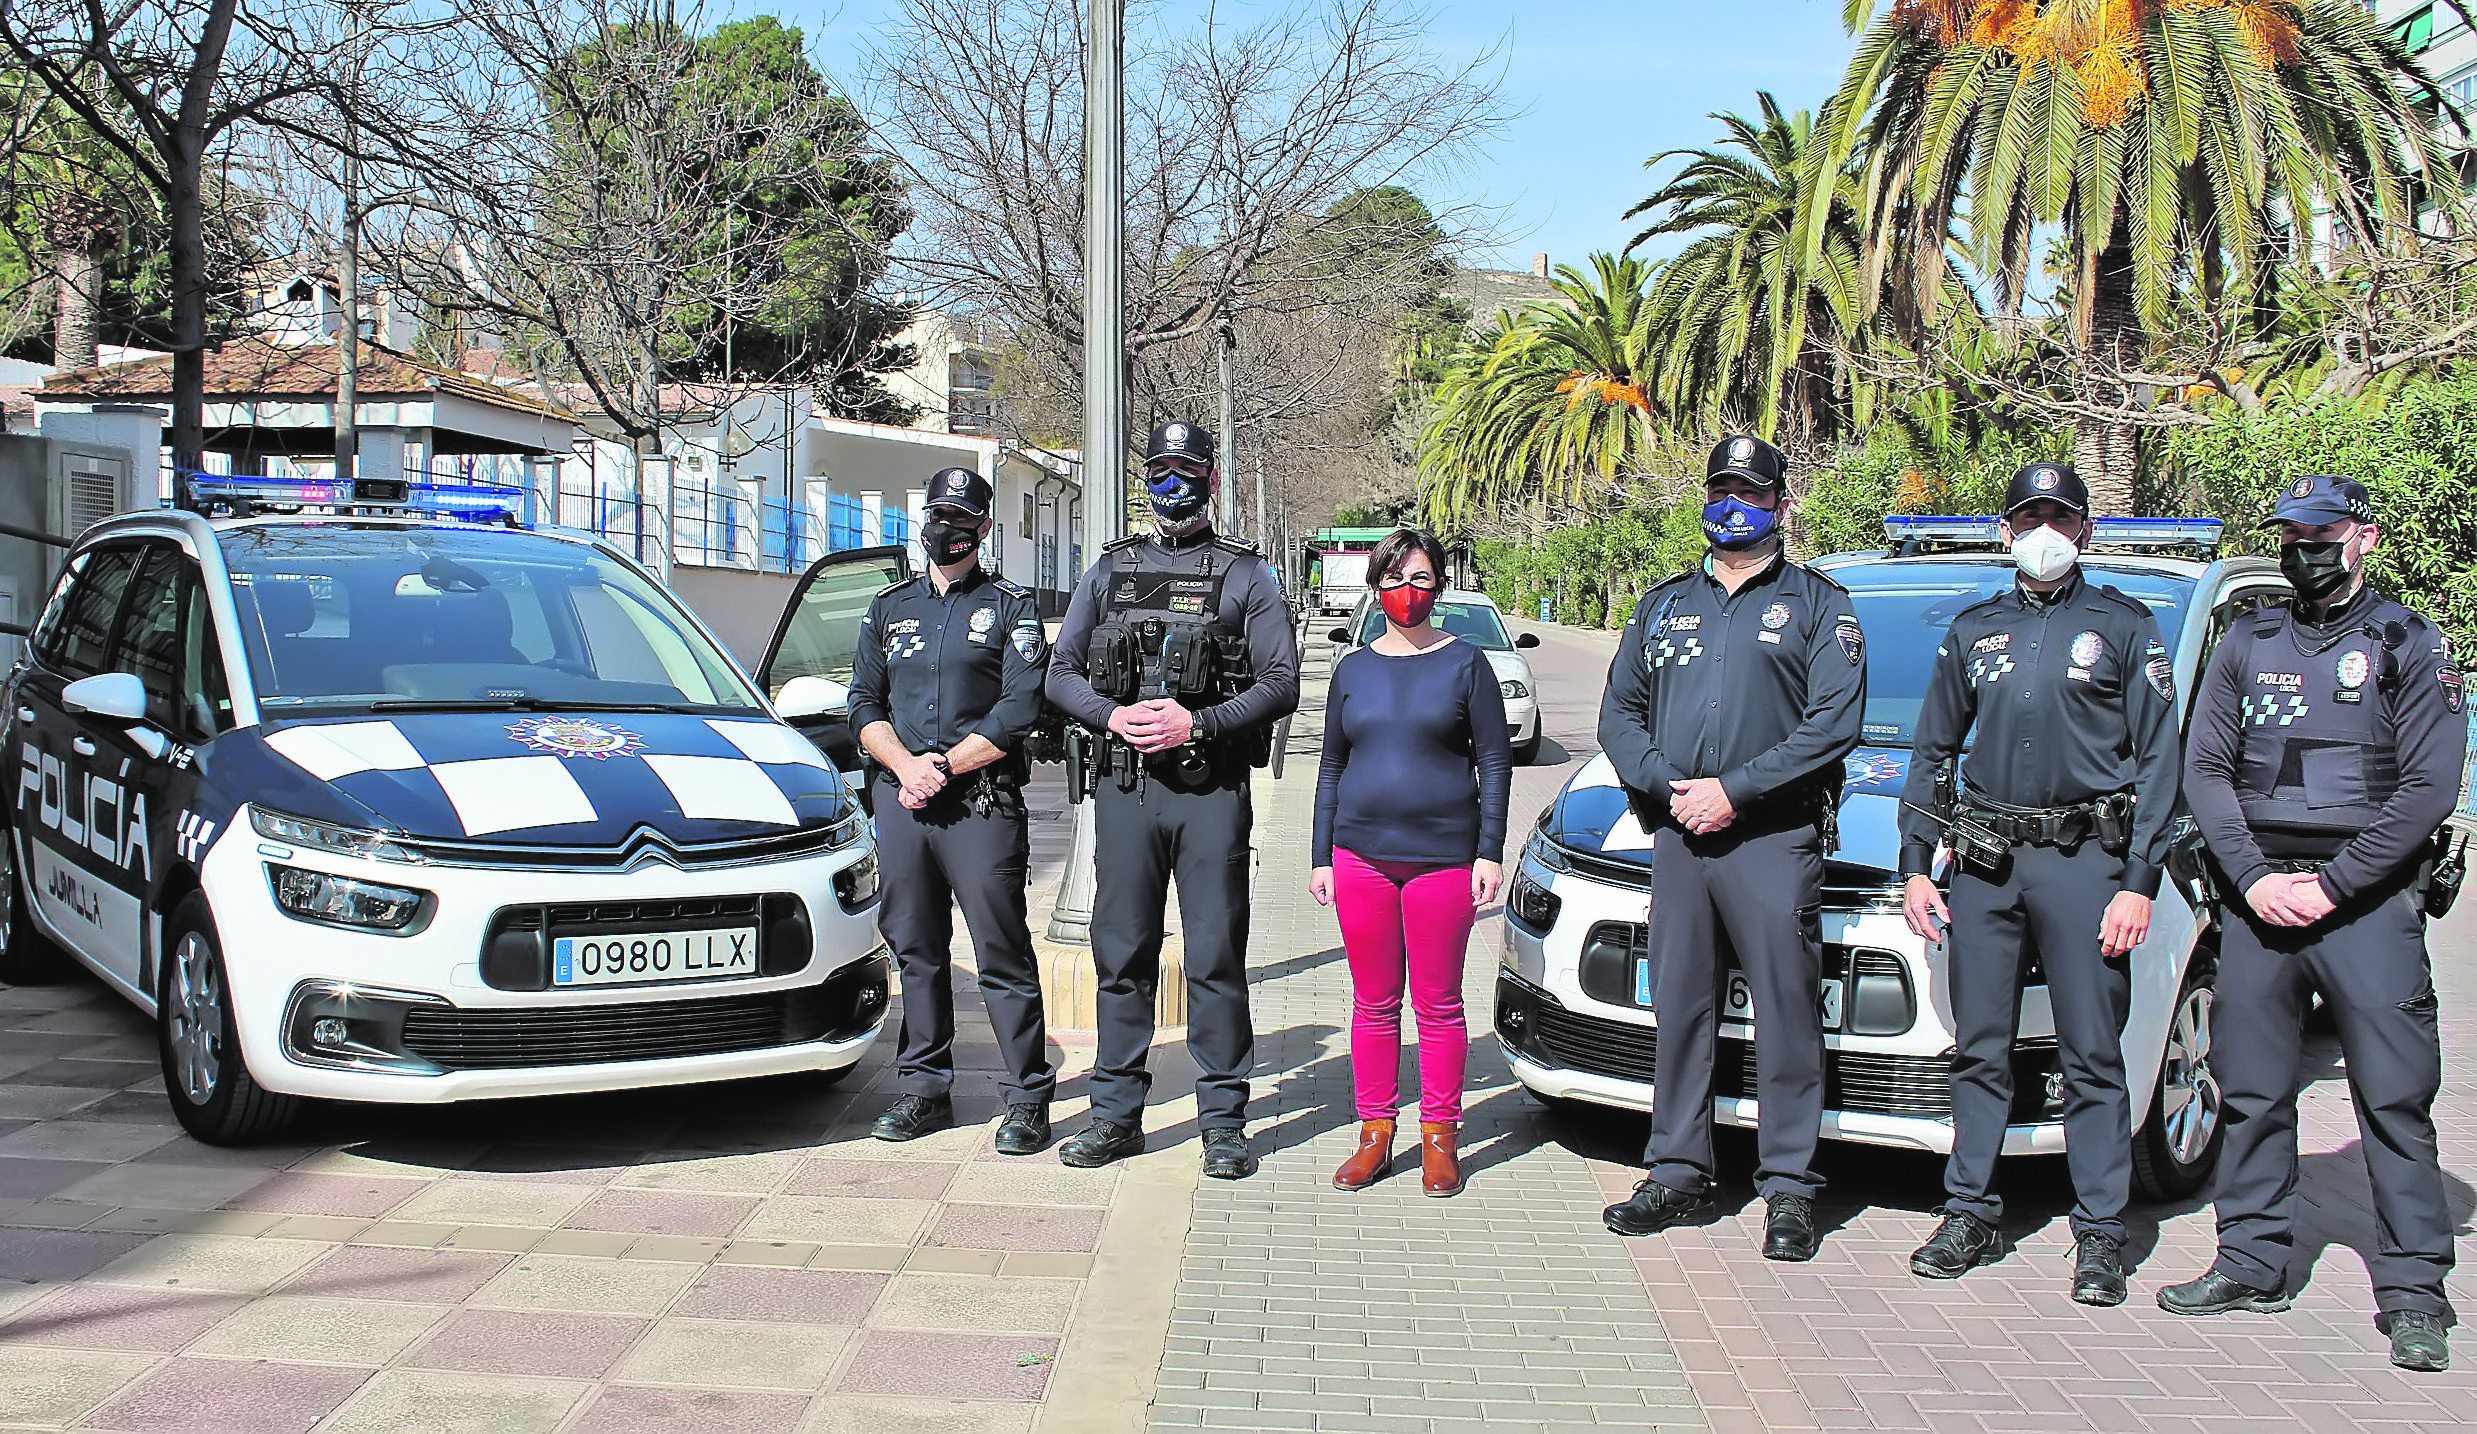 Dos nuevos coches patrulla se incorporan a la flota de la Policía Local